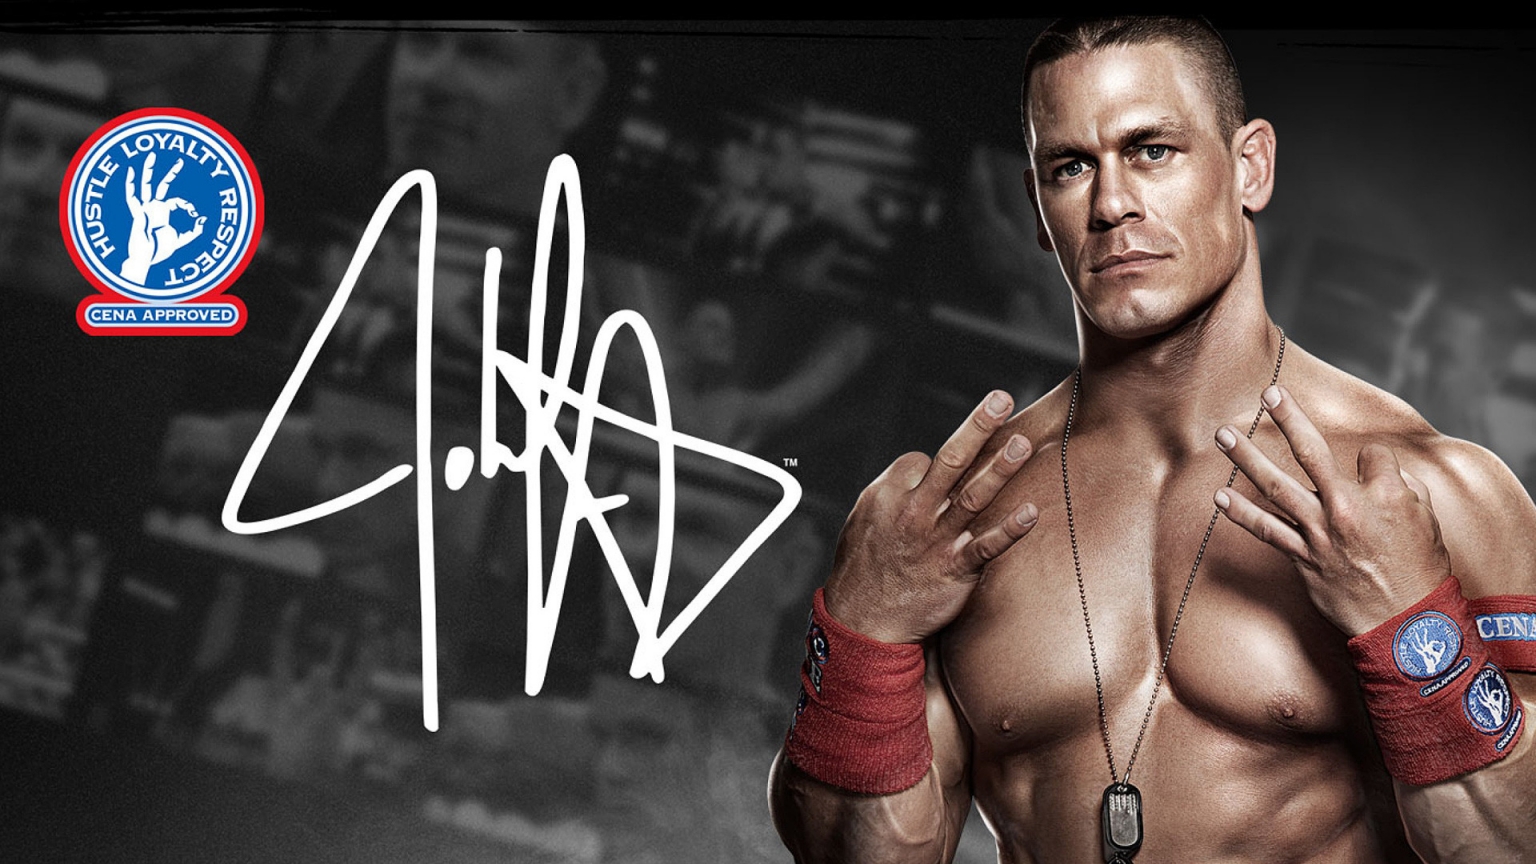 John Cena WWE for 1536 x 864 HDTV resolution